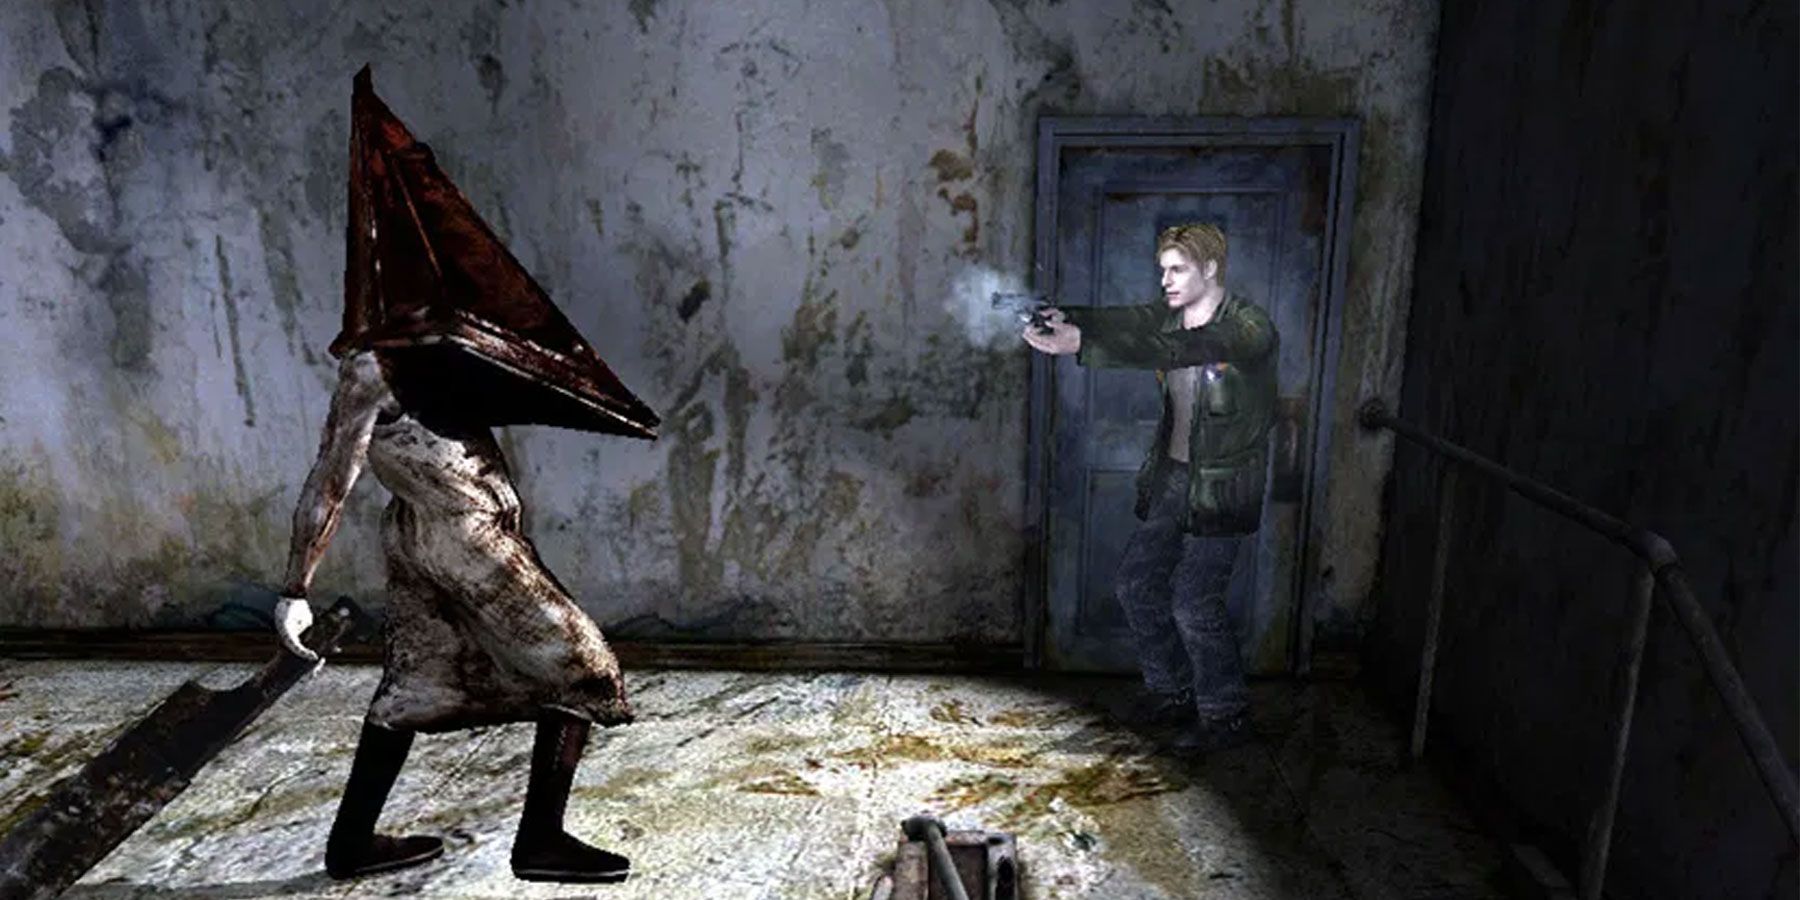 Nu burde være tid til en Silent Hill 2-genindspilning